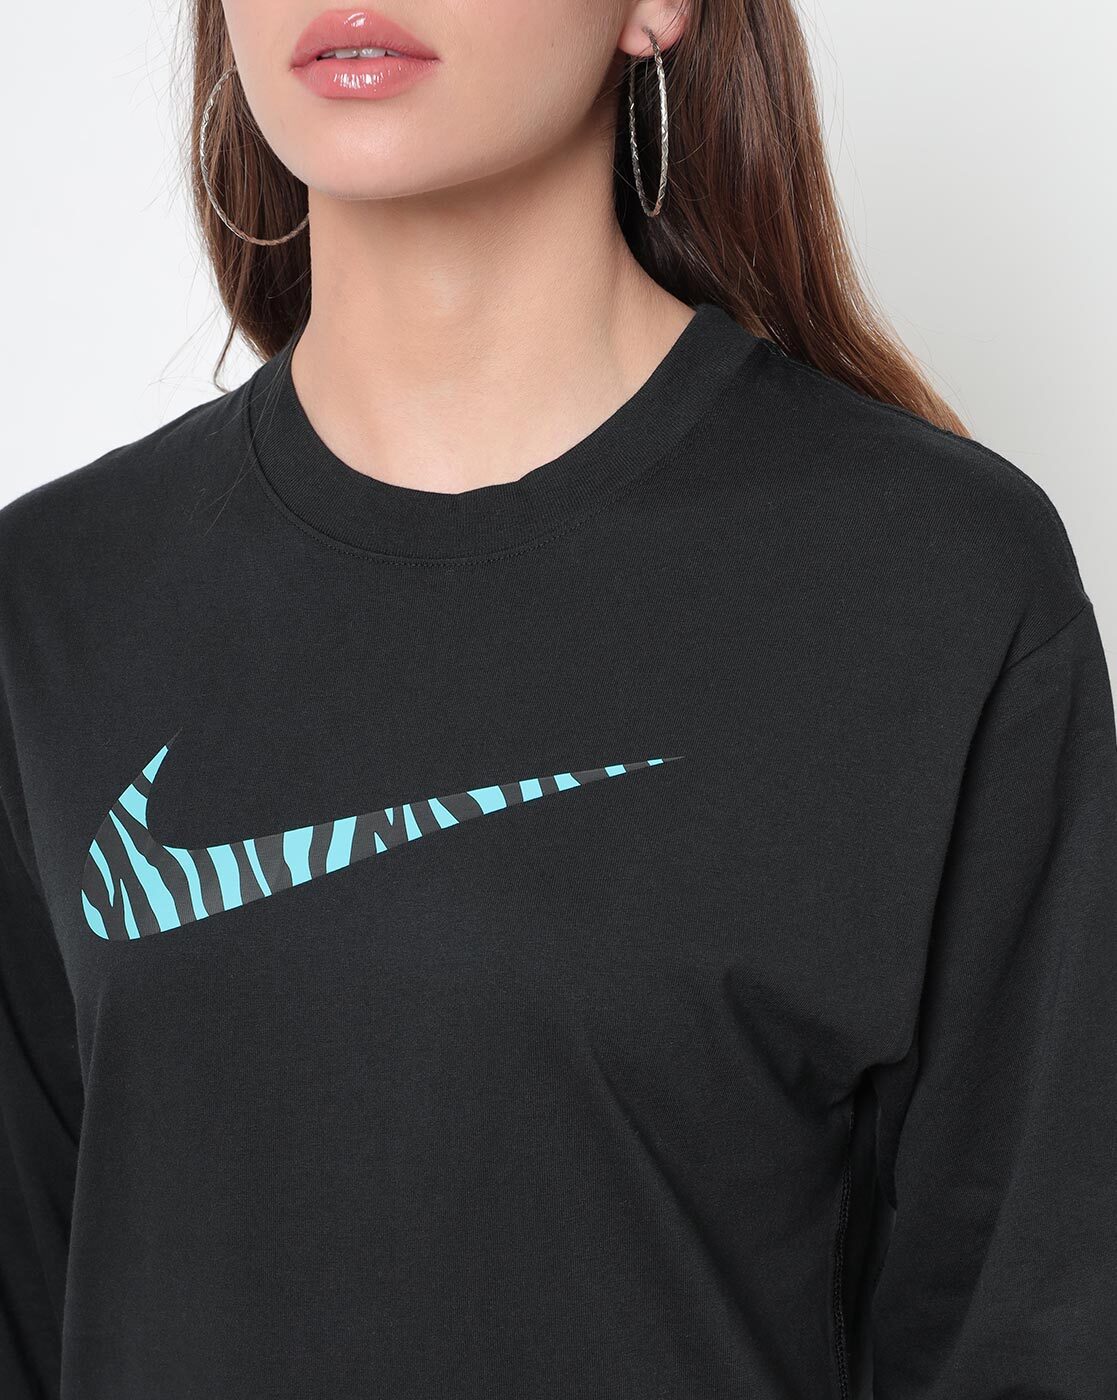 Buy Black Sweatshirt & Hoodies for Women by NIKE Online